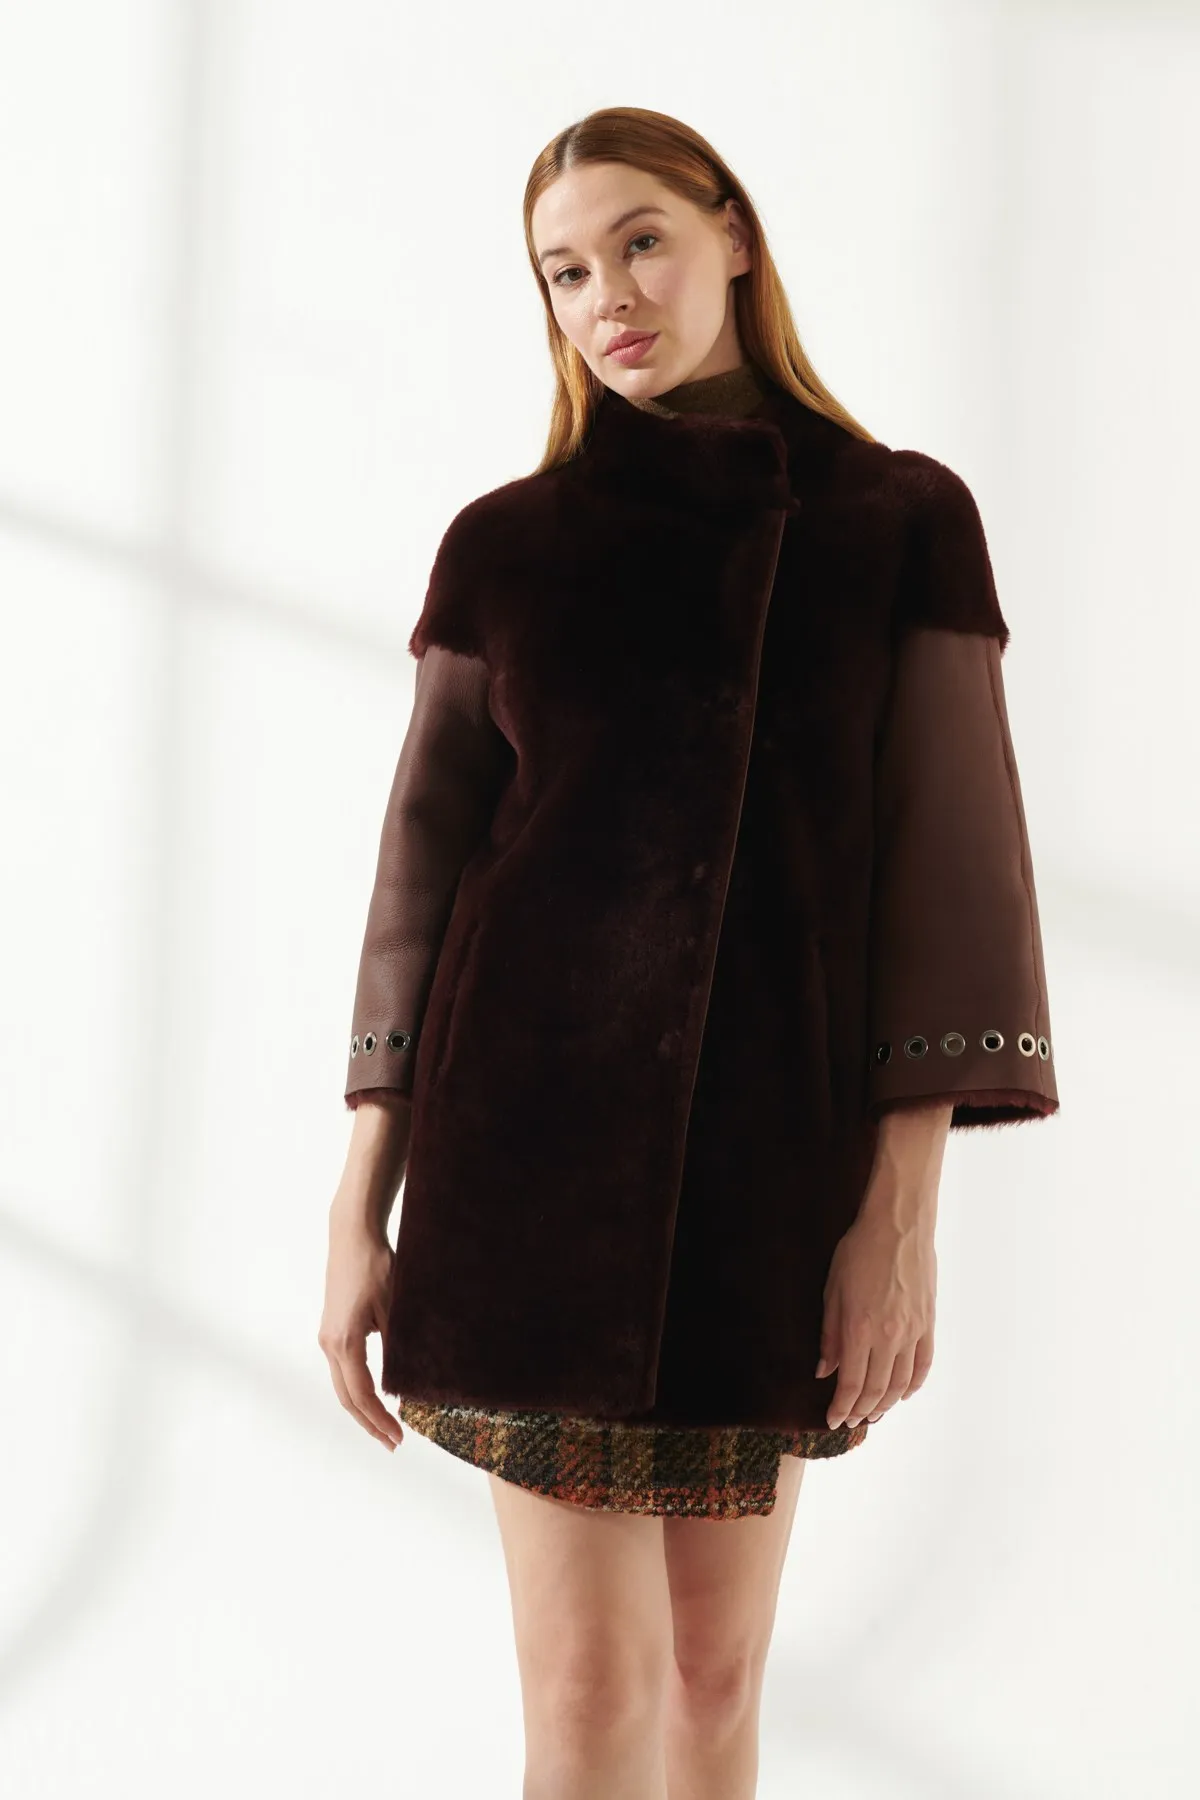 Enlarge Women's Fur Leather Jacket Winter Warm Coat Design Clothing Products Classic Plush Coat Turkiyede Produced Long Parka Fashion